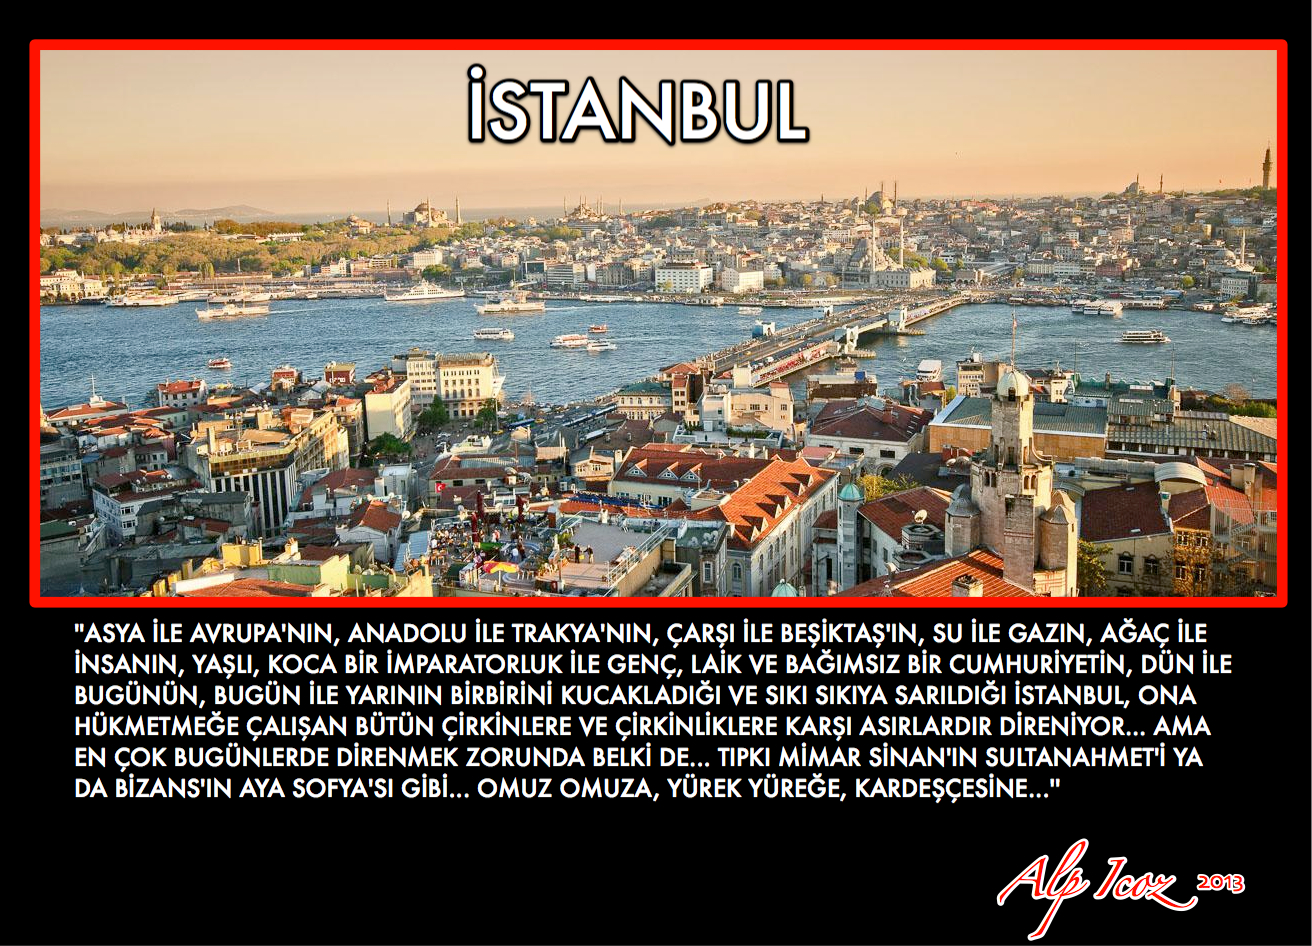 Istanbul Quotes. QuotesGram